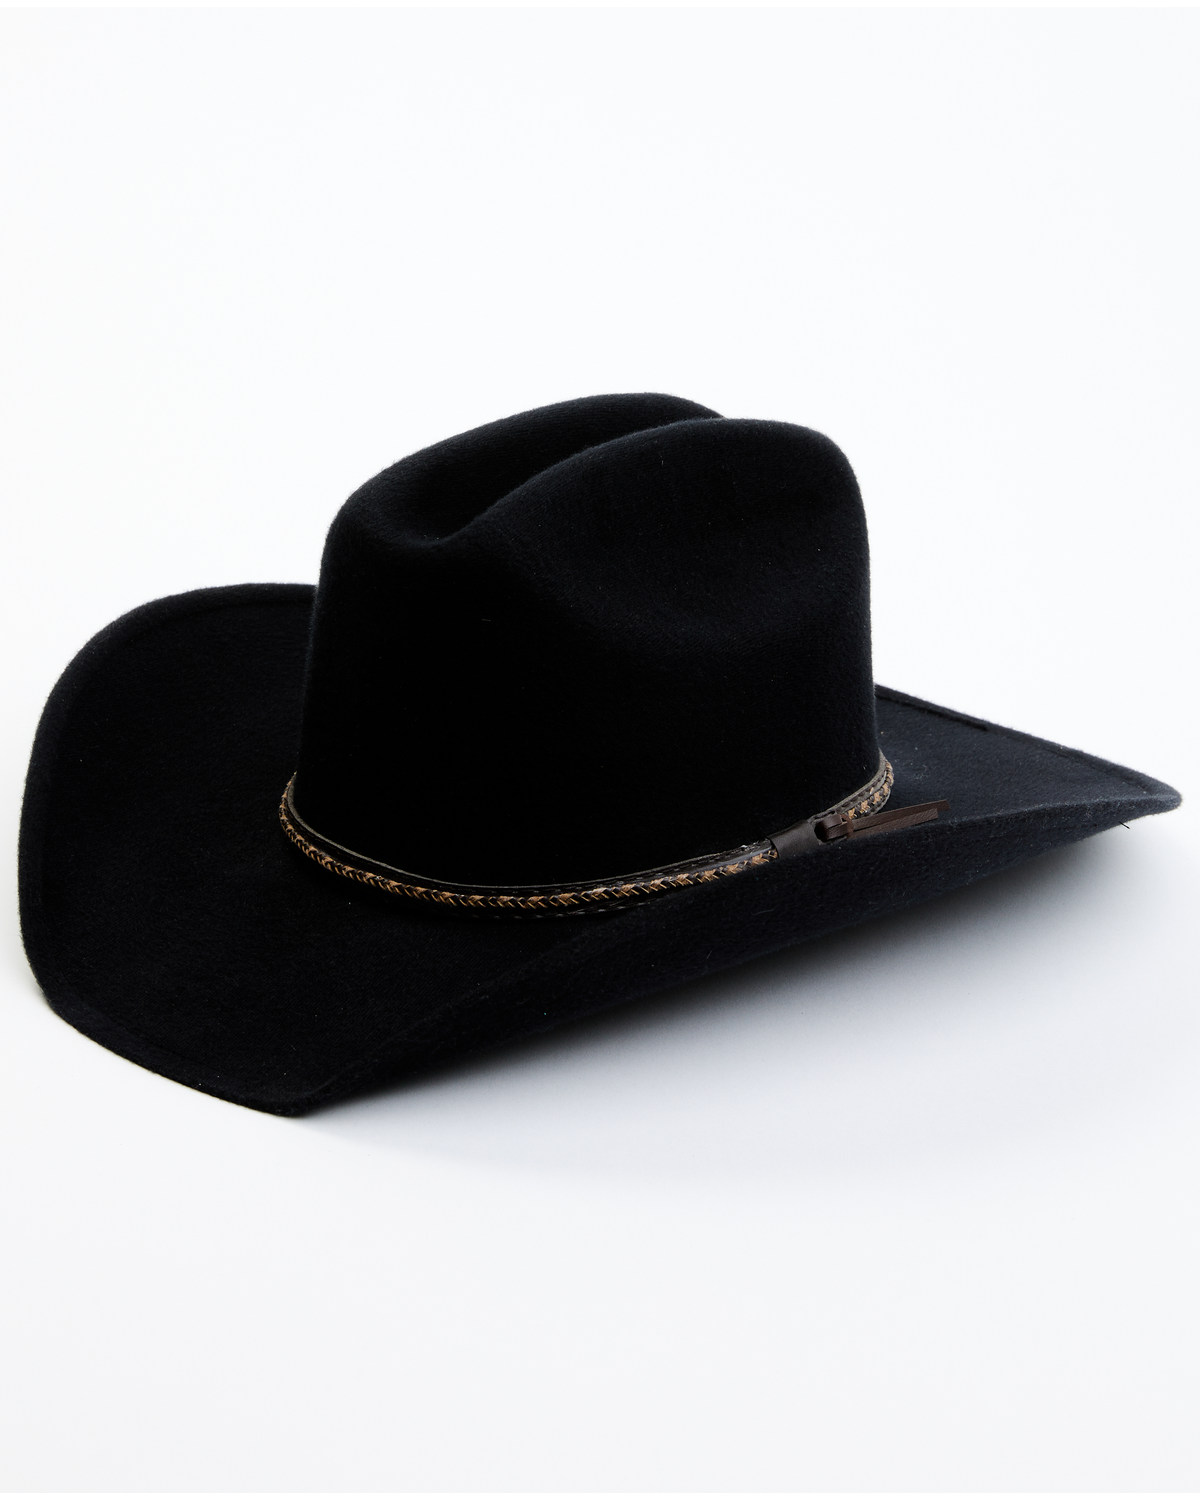 Cody James Felt Cowboy Hat